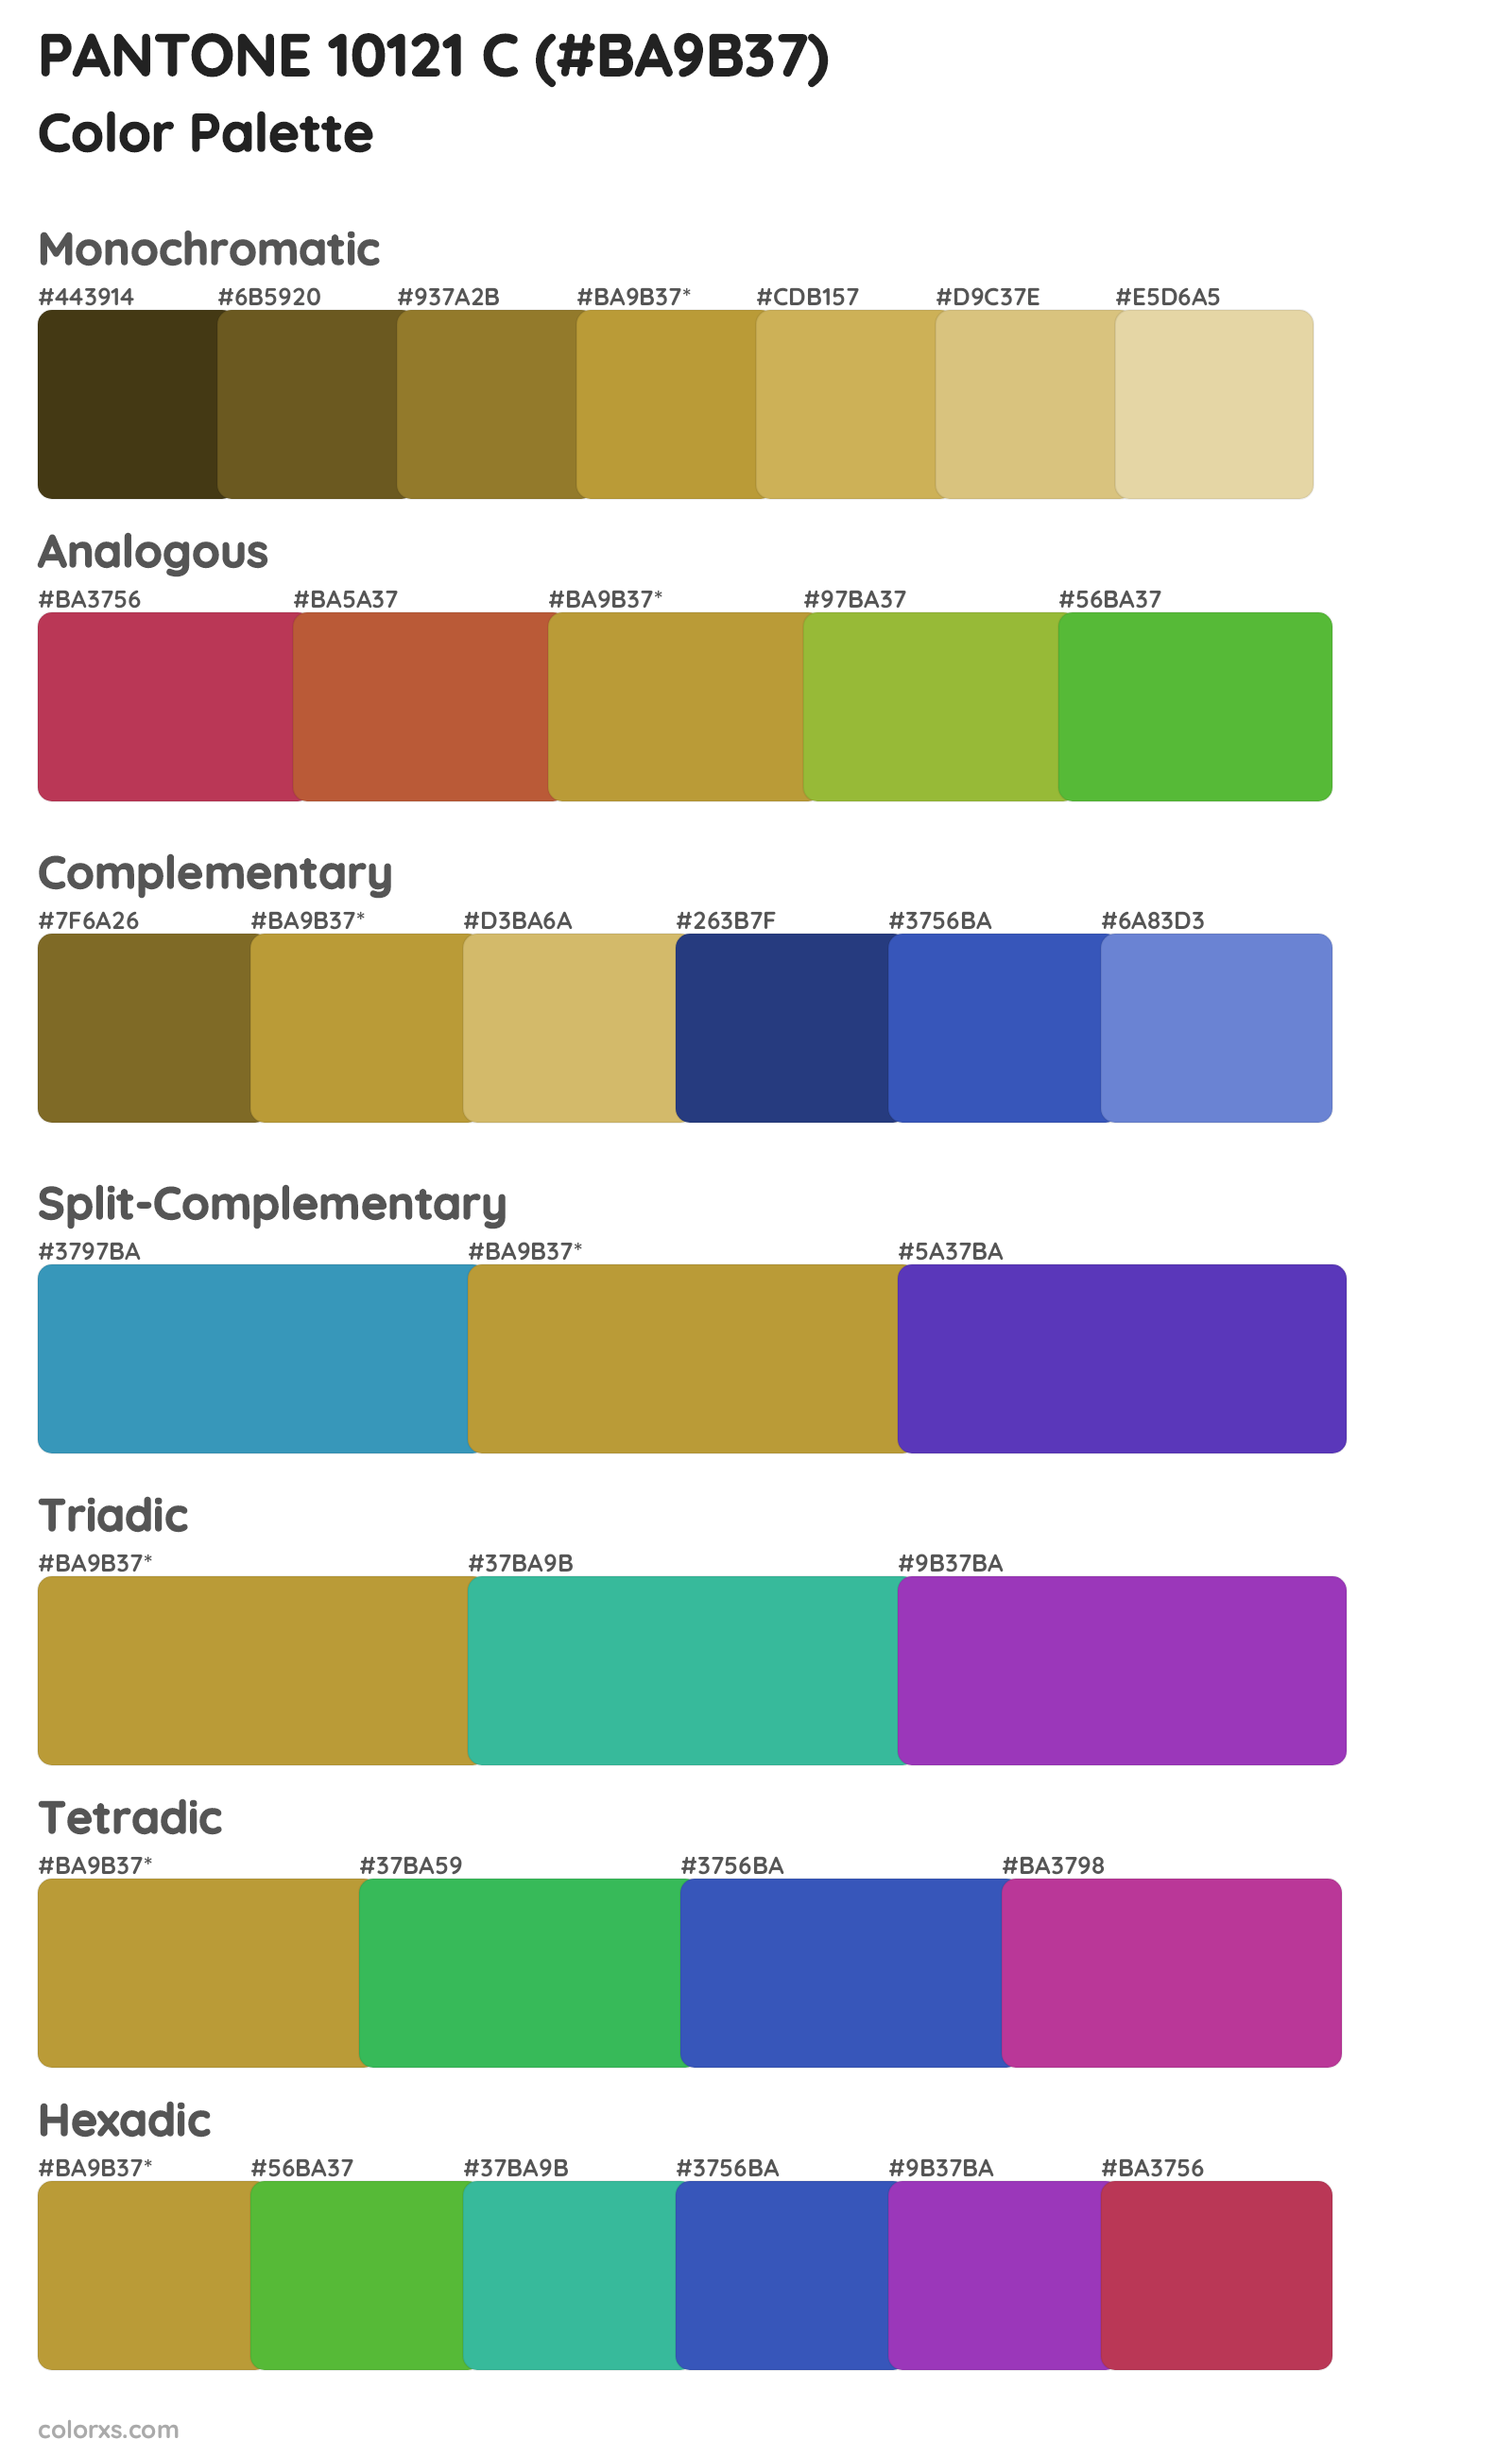 PANTONE 10121 C Color Scheme Palettes